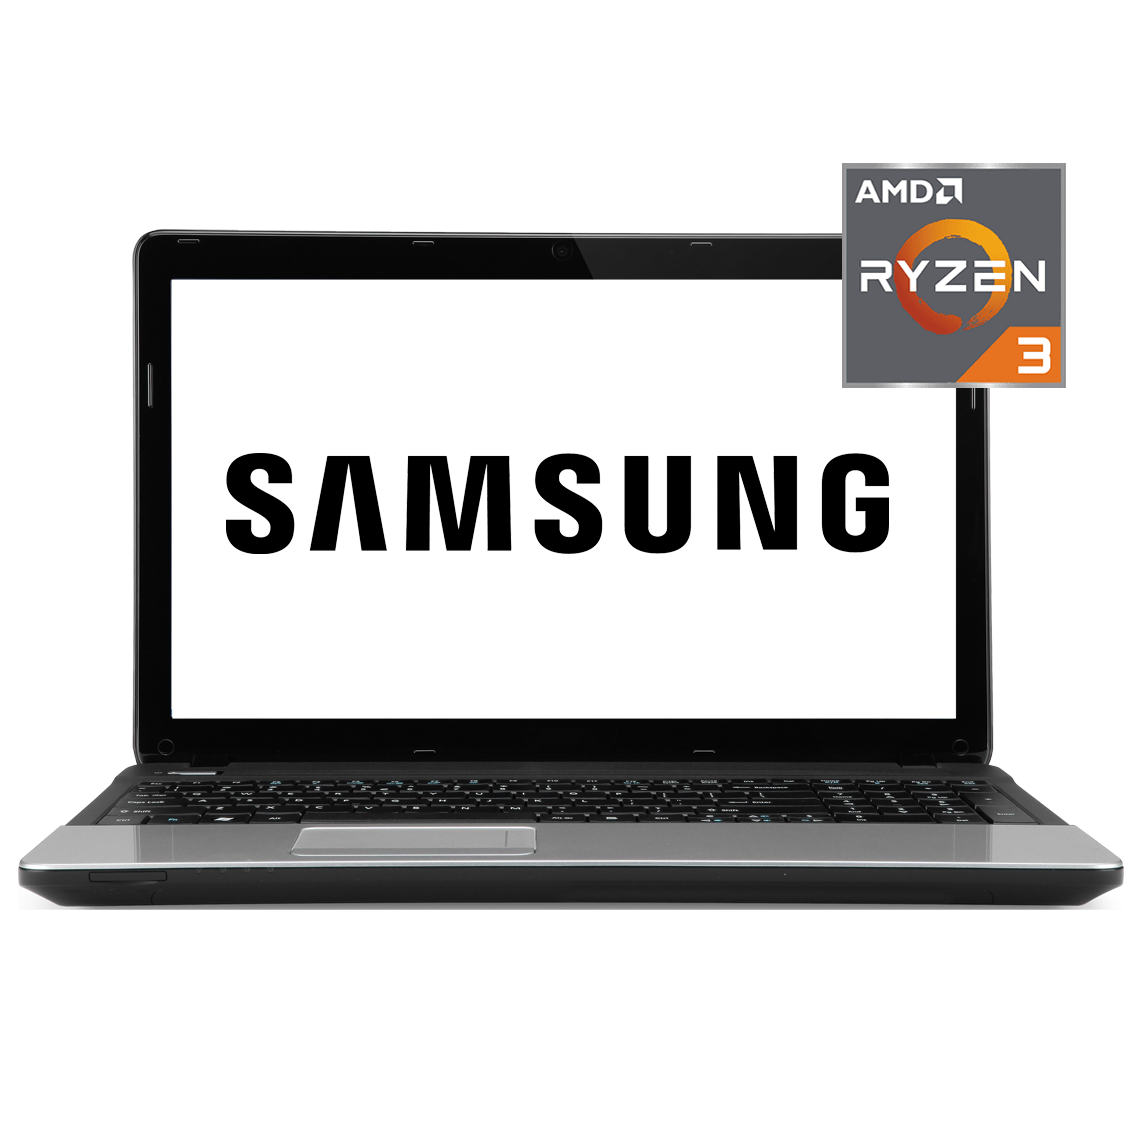 Samsung - 13 inch AMD Ryzen 3